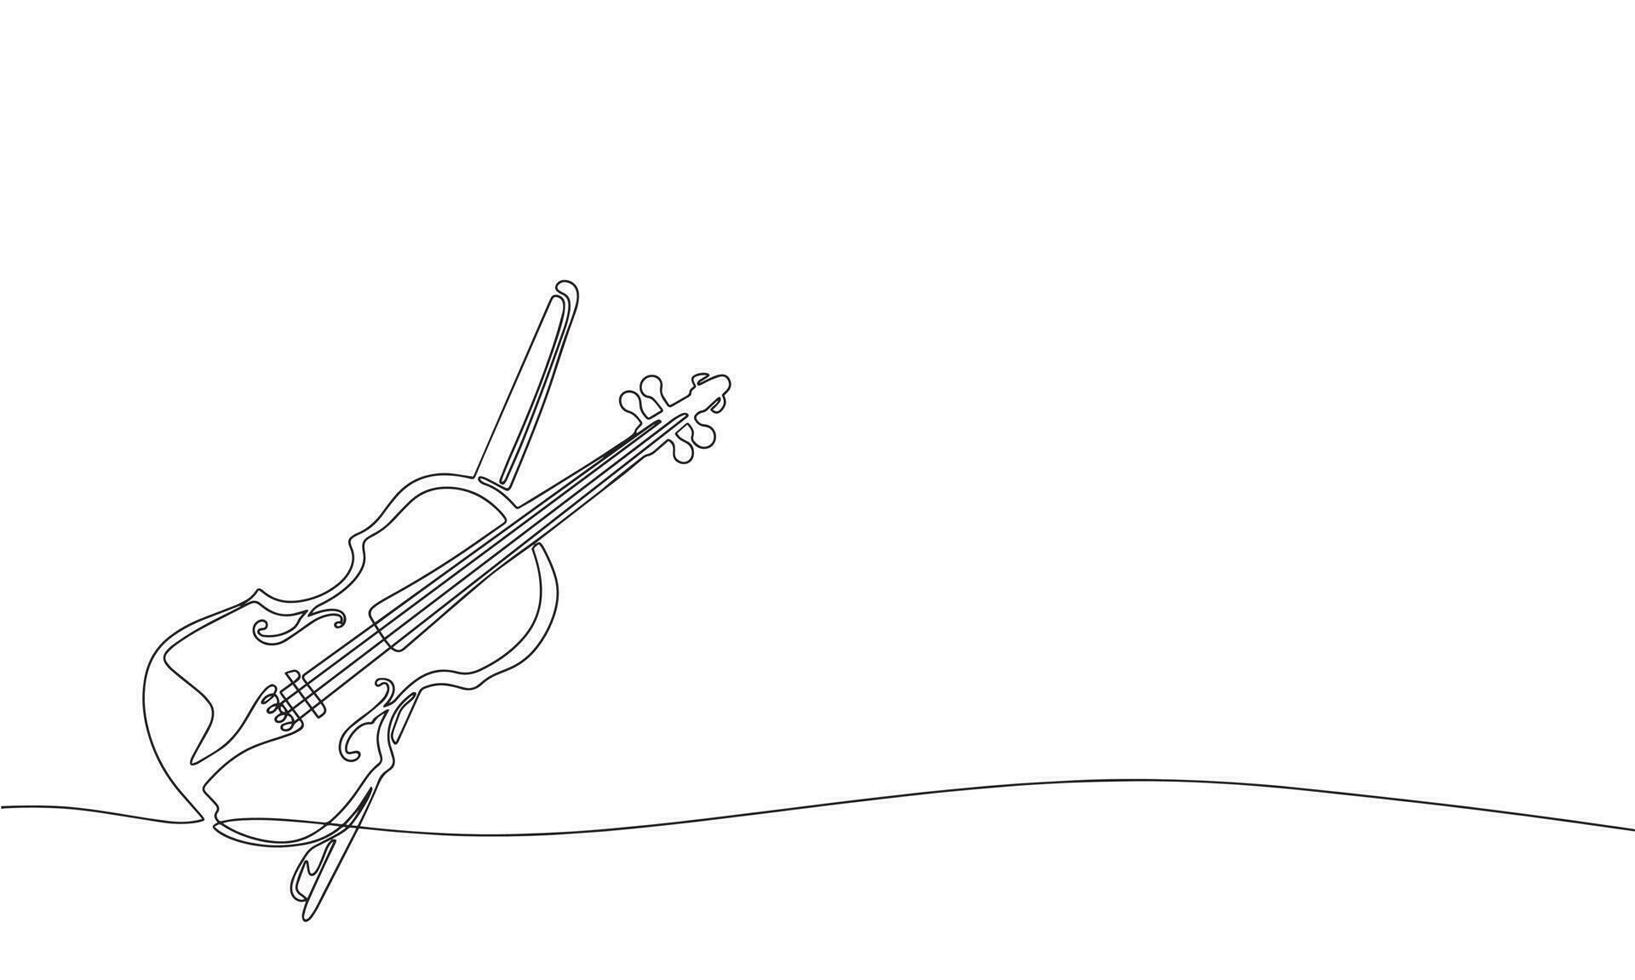 violino e arco. 1 linha contínuo abstrato concepção do musical instrumento. linha arte, contorno, silhueta, vetor ilustração.